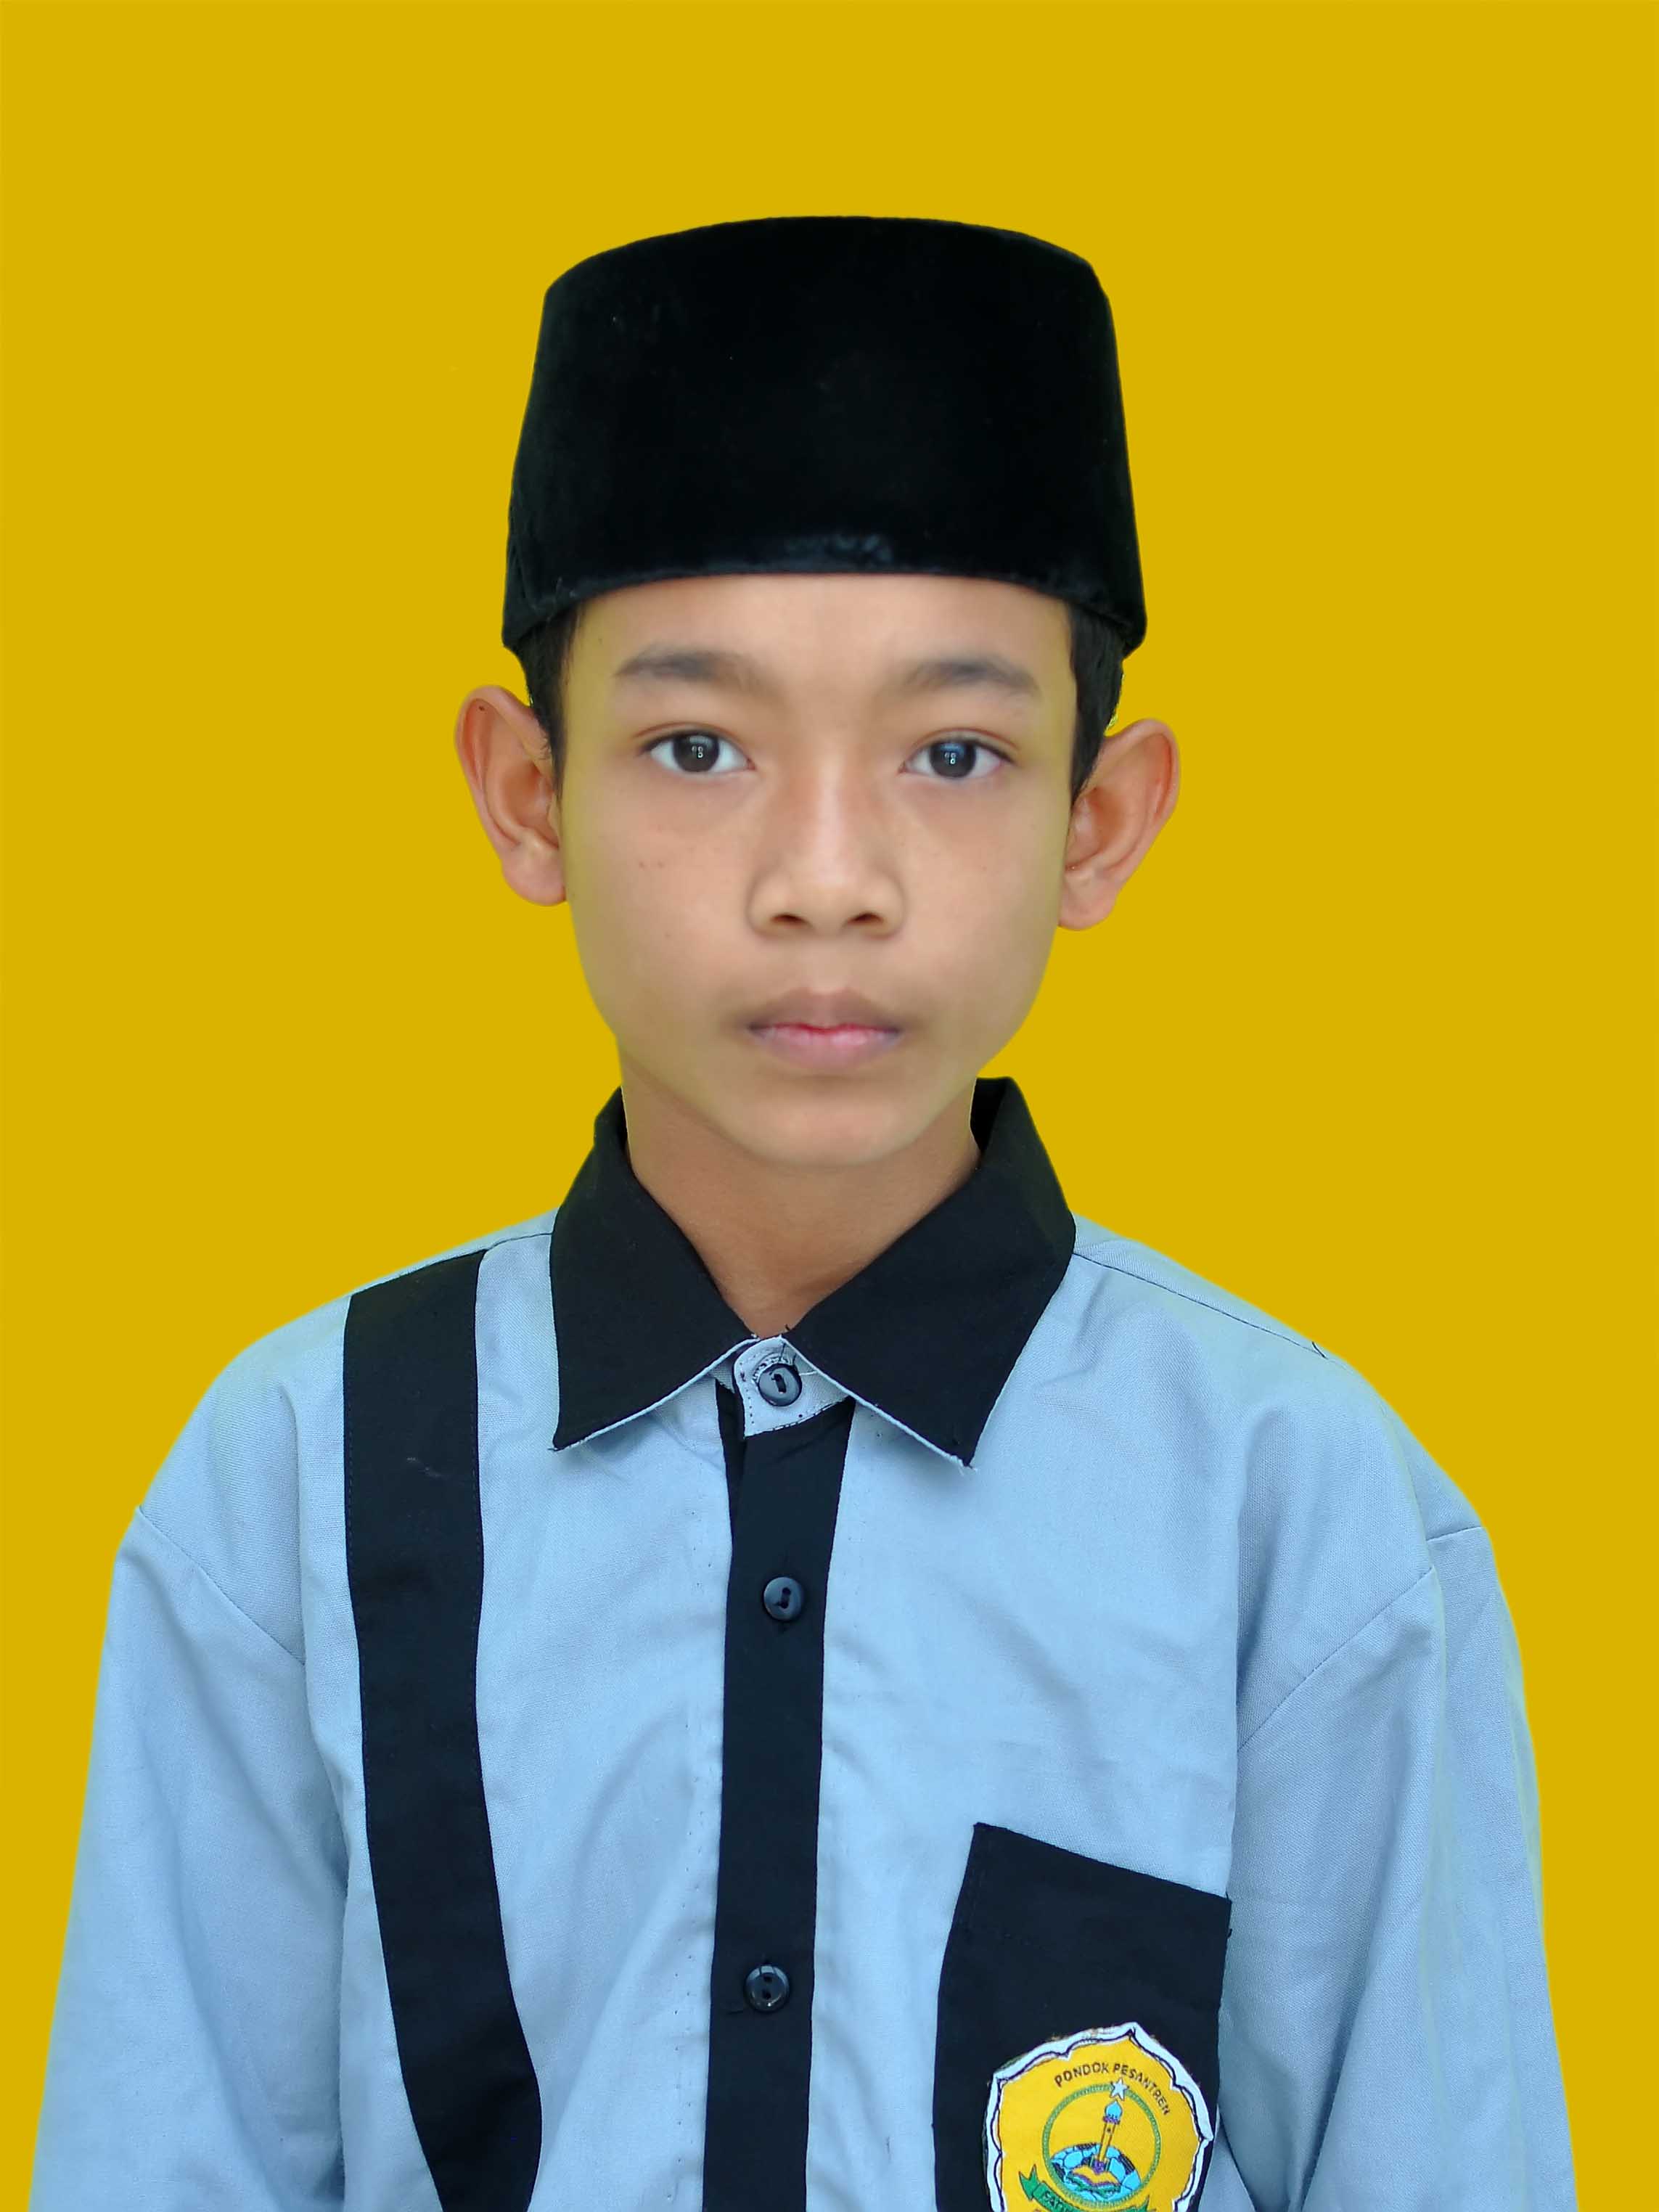 Moh Rafi Setyawan id: 670 Fatihul Ulum